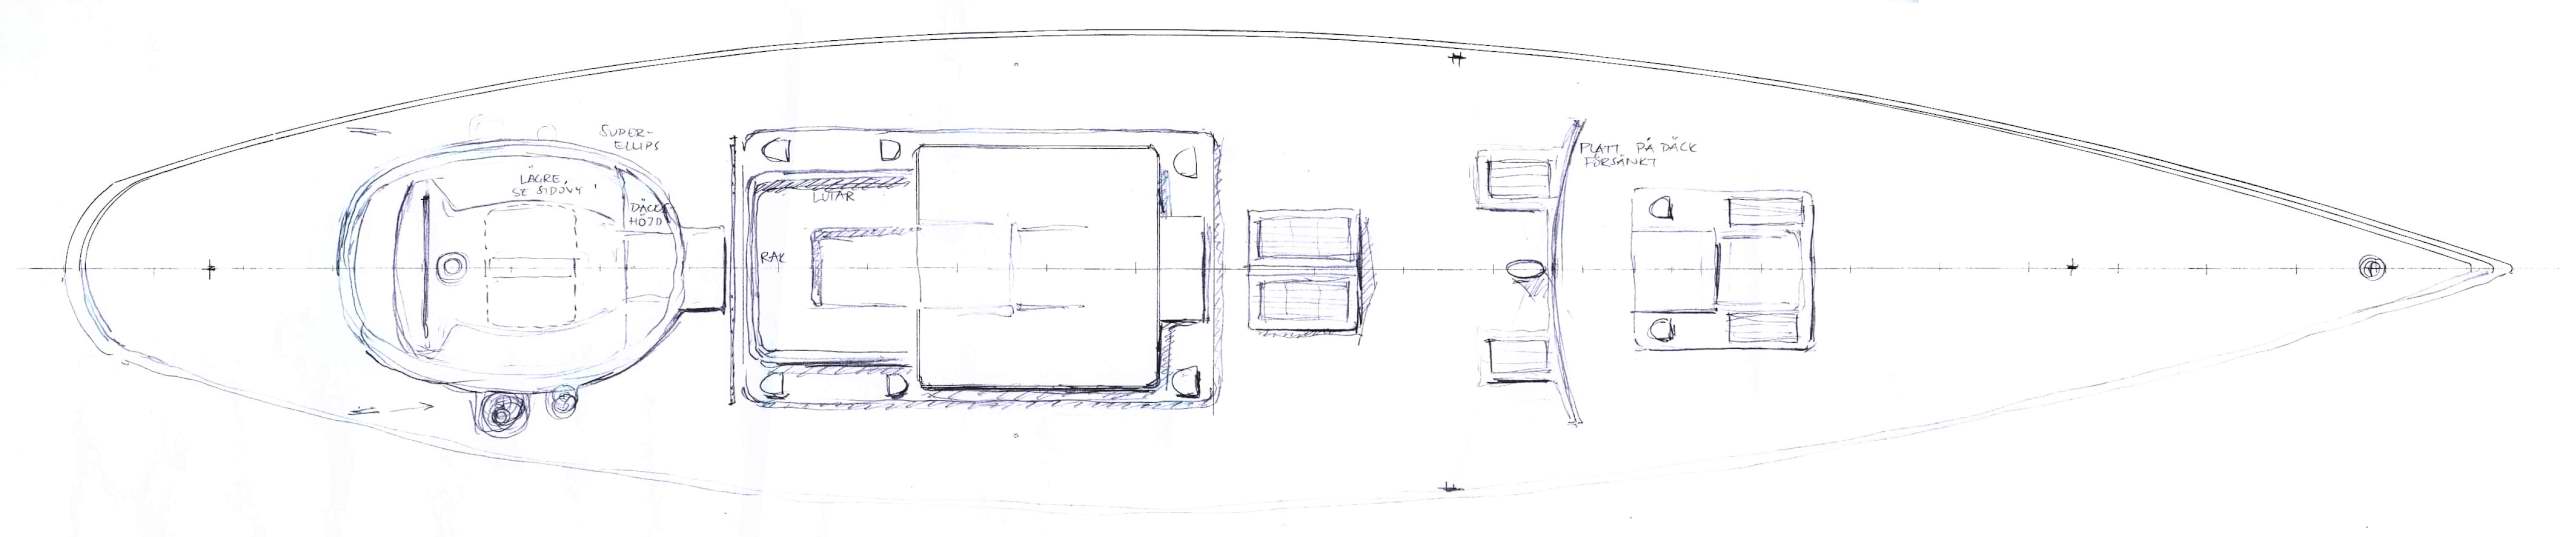 90' Classic, deck, early sketch (c) Heyman Yachts